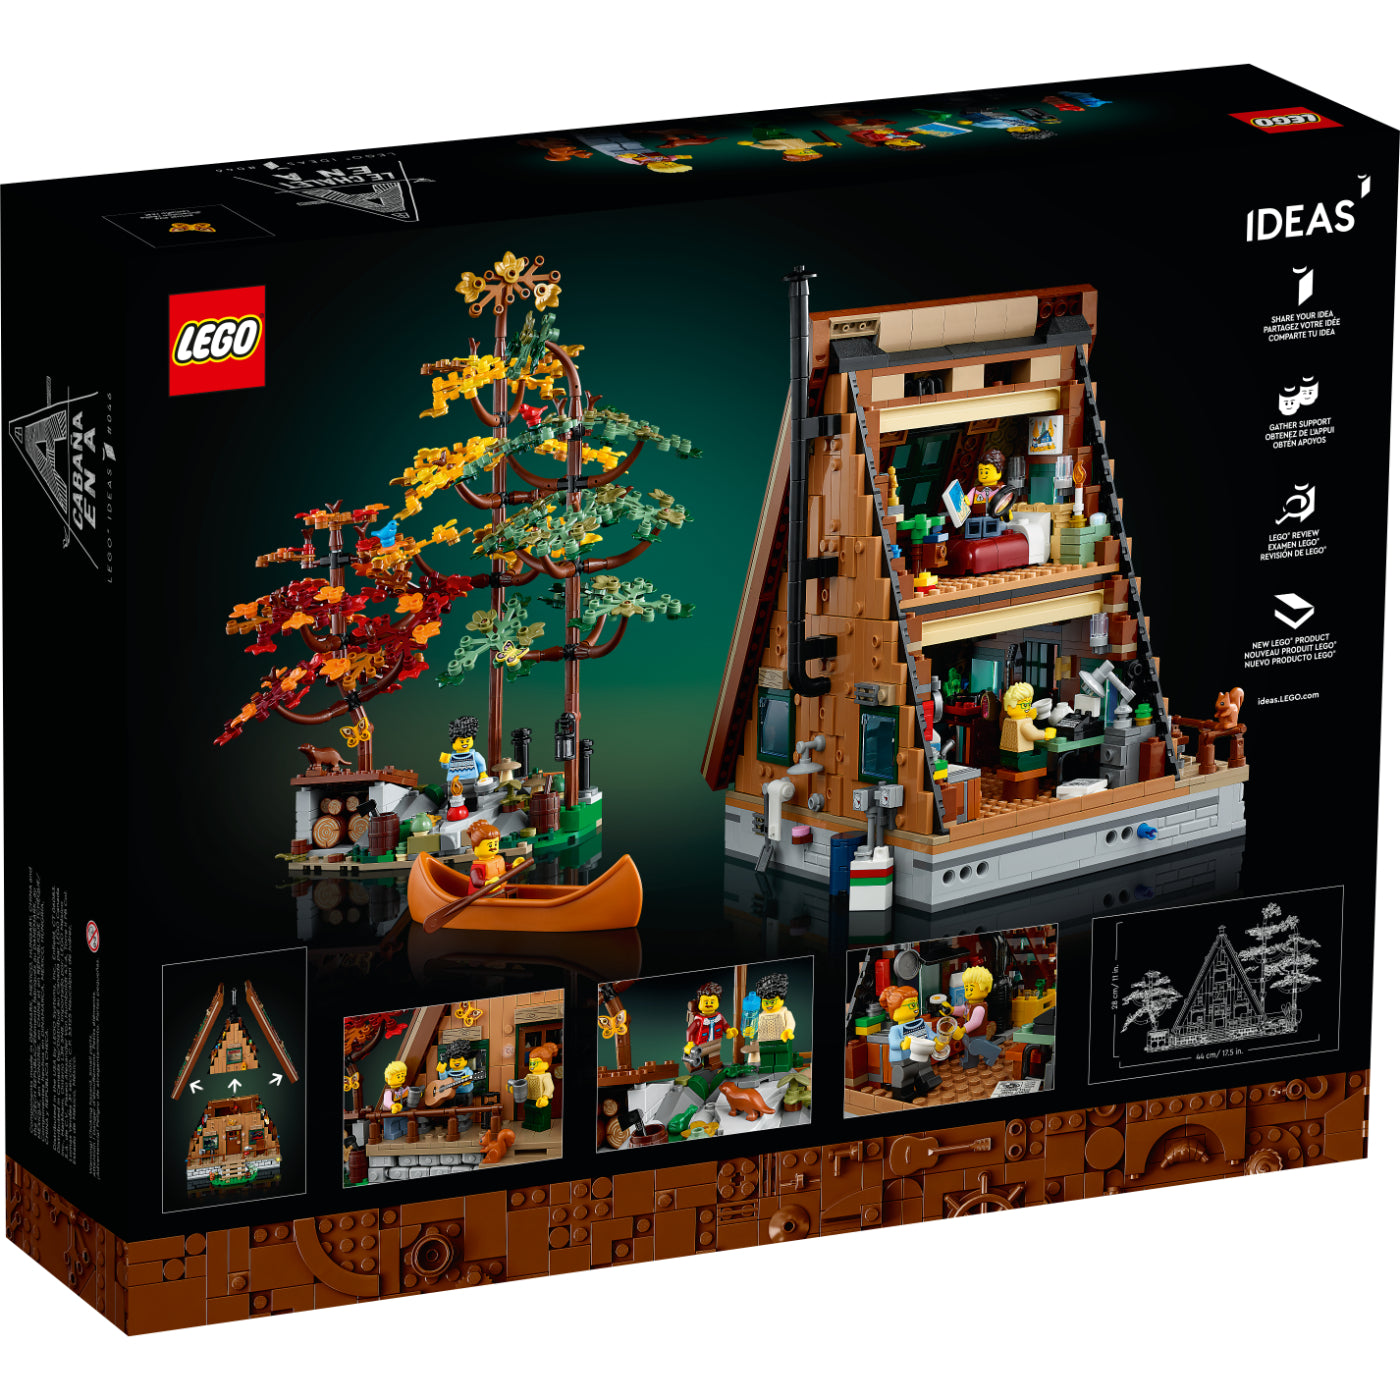 LEGO - Rosa icónica 40460 : : Juguetes y Juegos